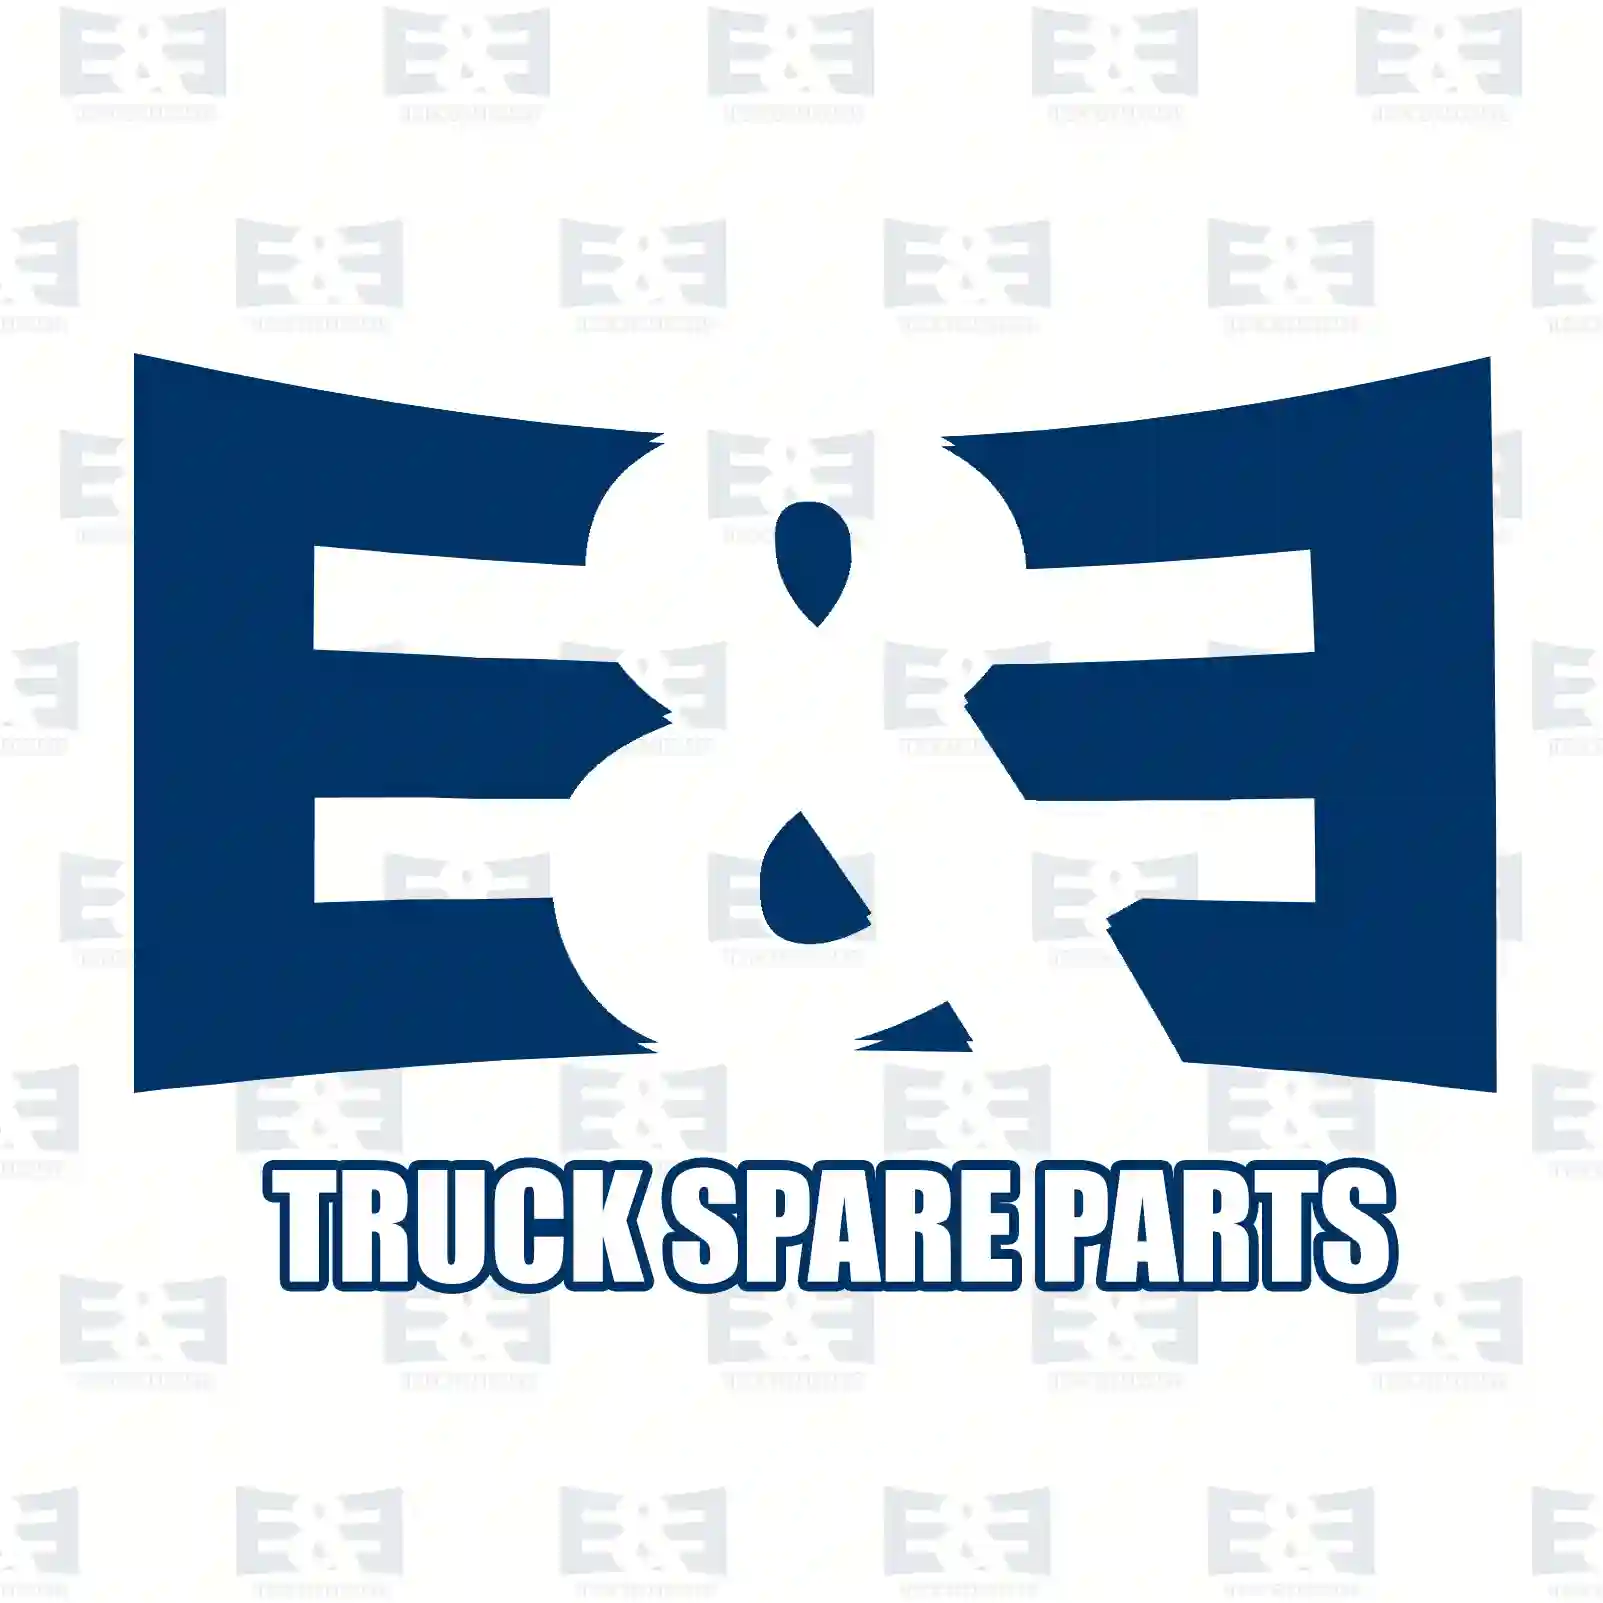 Wiper motor, 2E2280002, 1620100, ZG20206-0008 ||  2E2280002 E&E Truck Spare Parts | Truck Spare Parts, Auotomotive Spare Parts Wiper motor, 2E2280002, 1620100, ZG20206-0008 ||  2E2280002 E&E Truck Spare Parts | Truck Spare Parts, Auotomotive Spare Parts